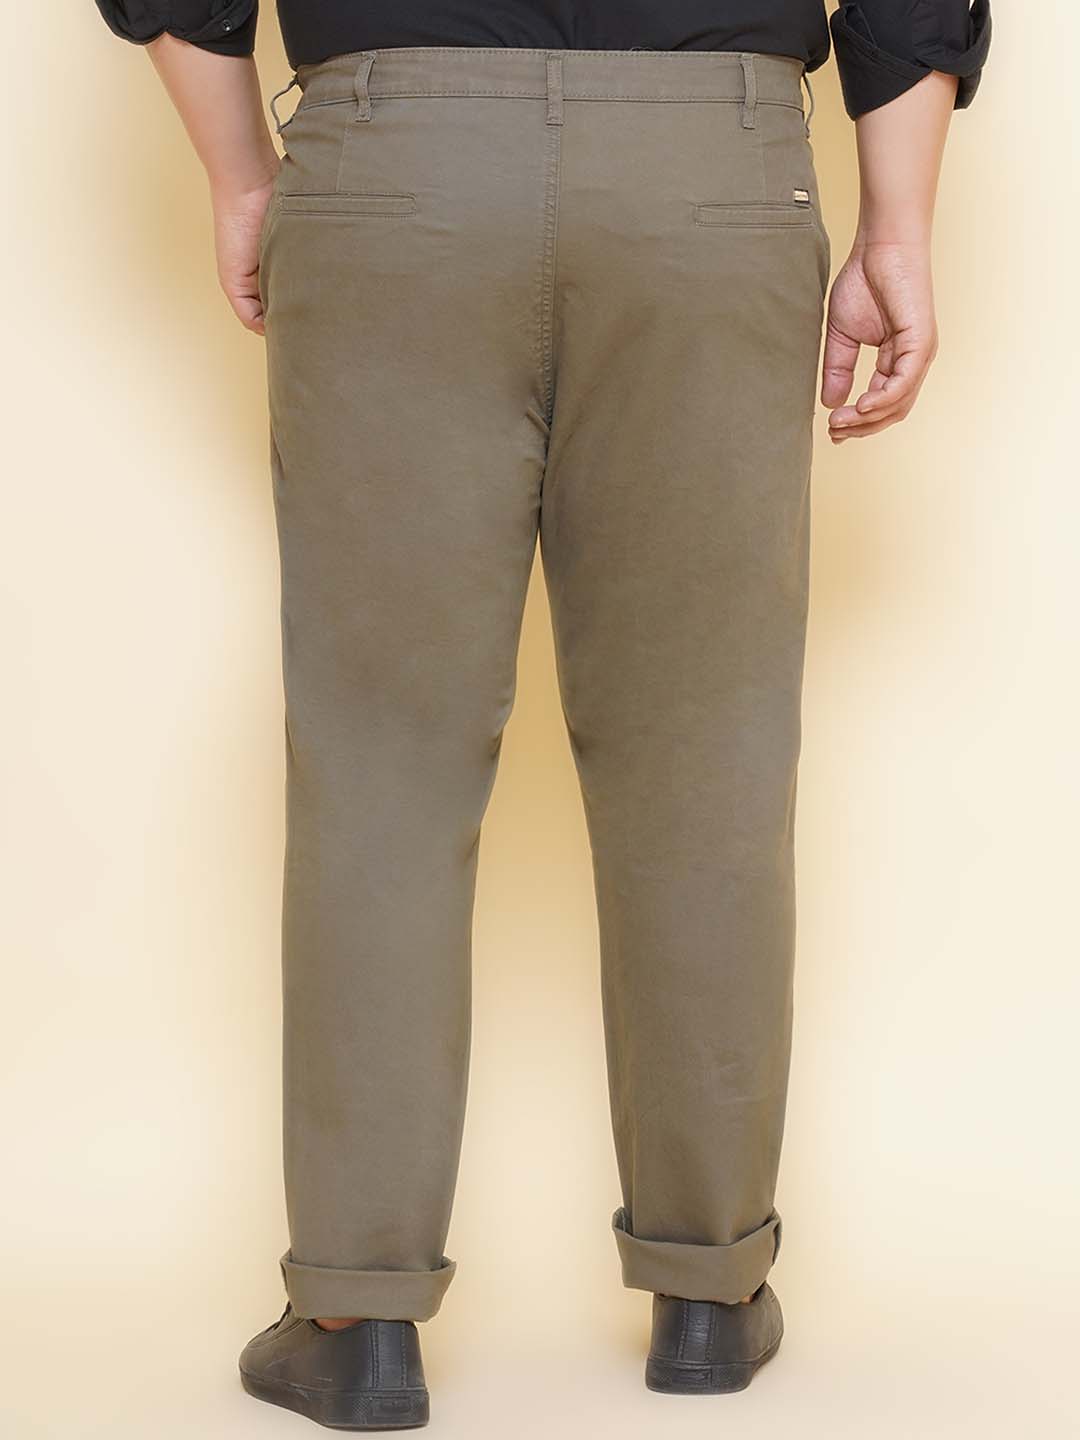 bottomwear/trousers/JPTR21021/jptr21021-5.jpg